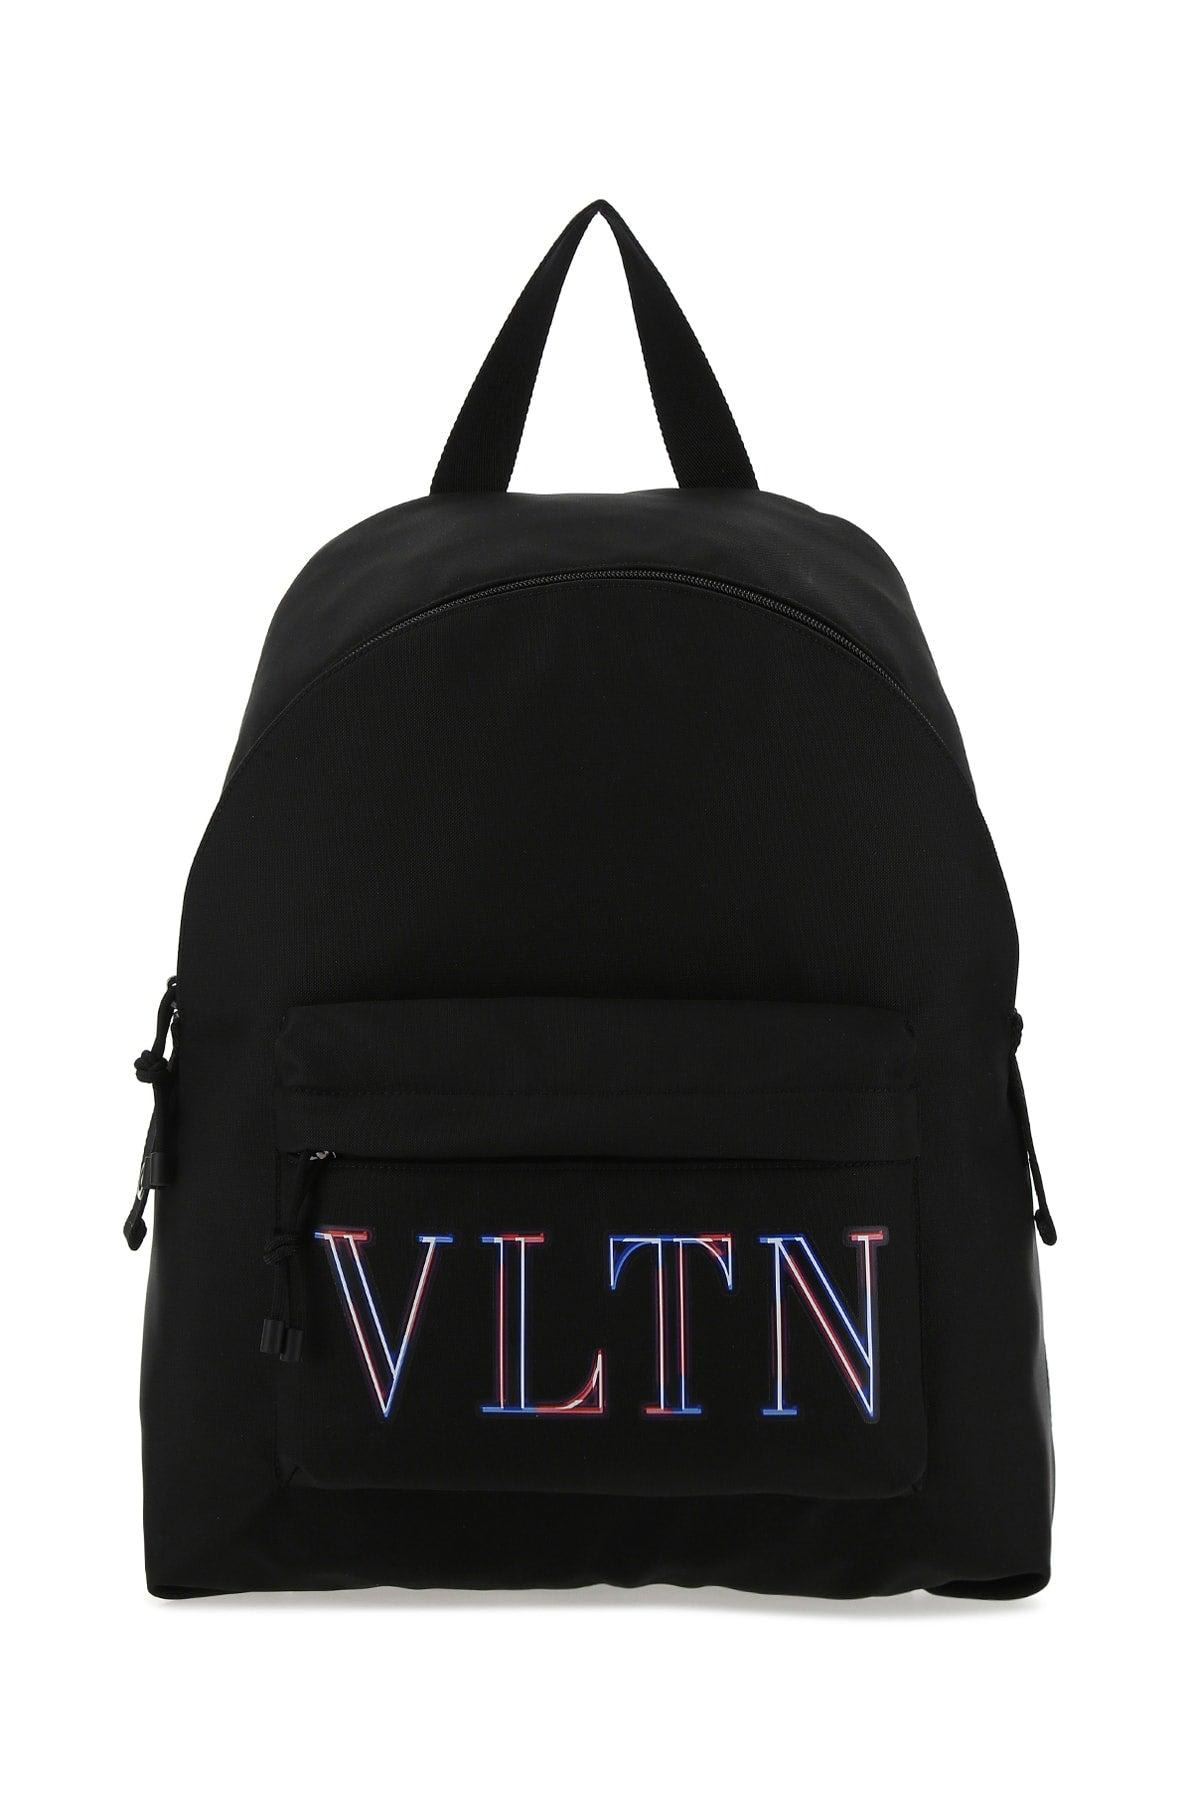 Valentino Neon Vltn Backpack